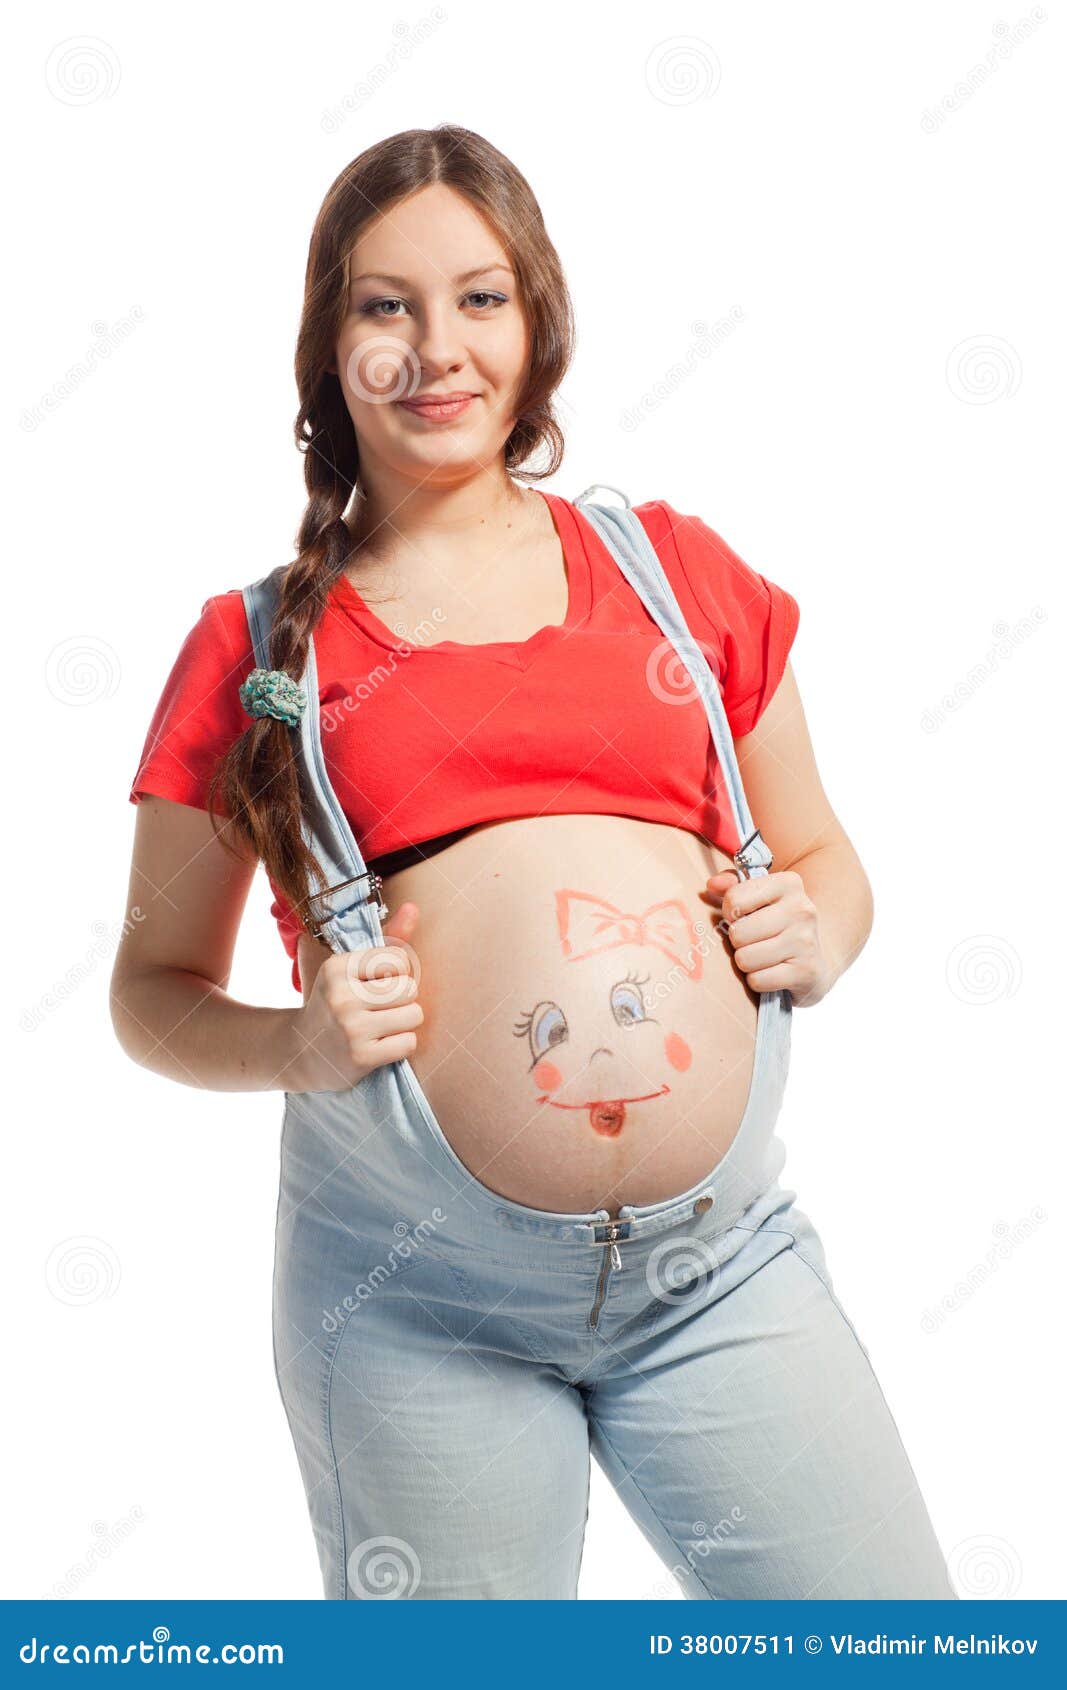 Жвачка беременным. Животик у беременных женщин. Беременна женщина. Рисунок на животике беременной женщине. Женщины с пузиком.